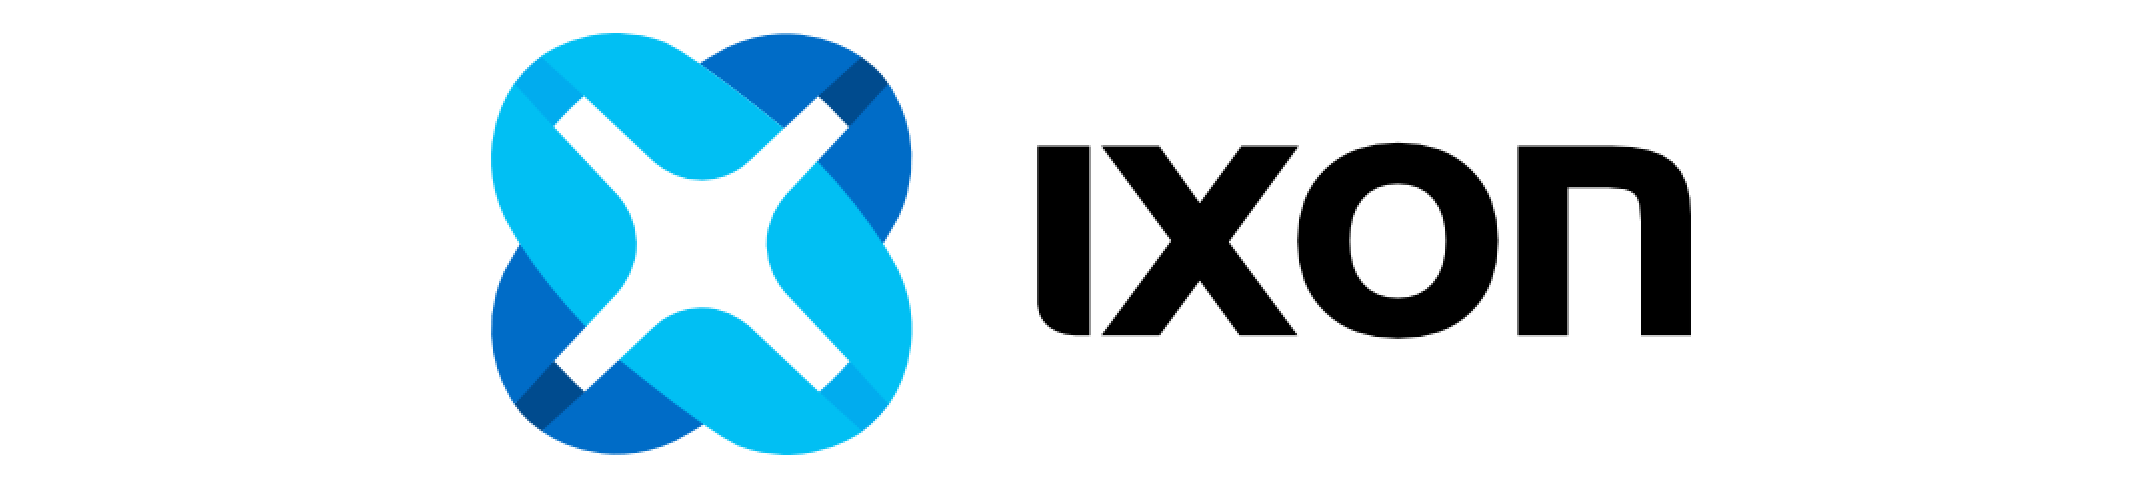 Ixon Logo - Rectangulo